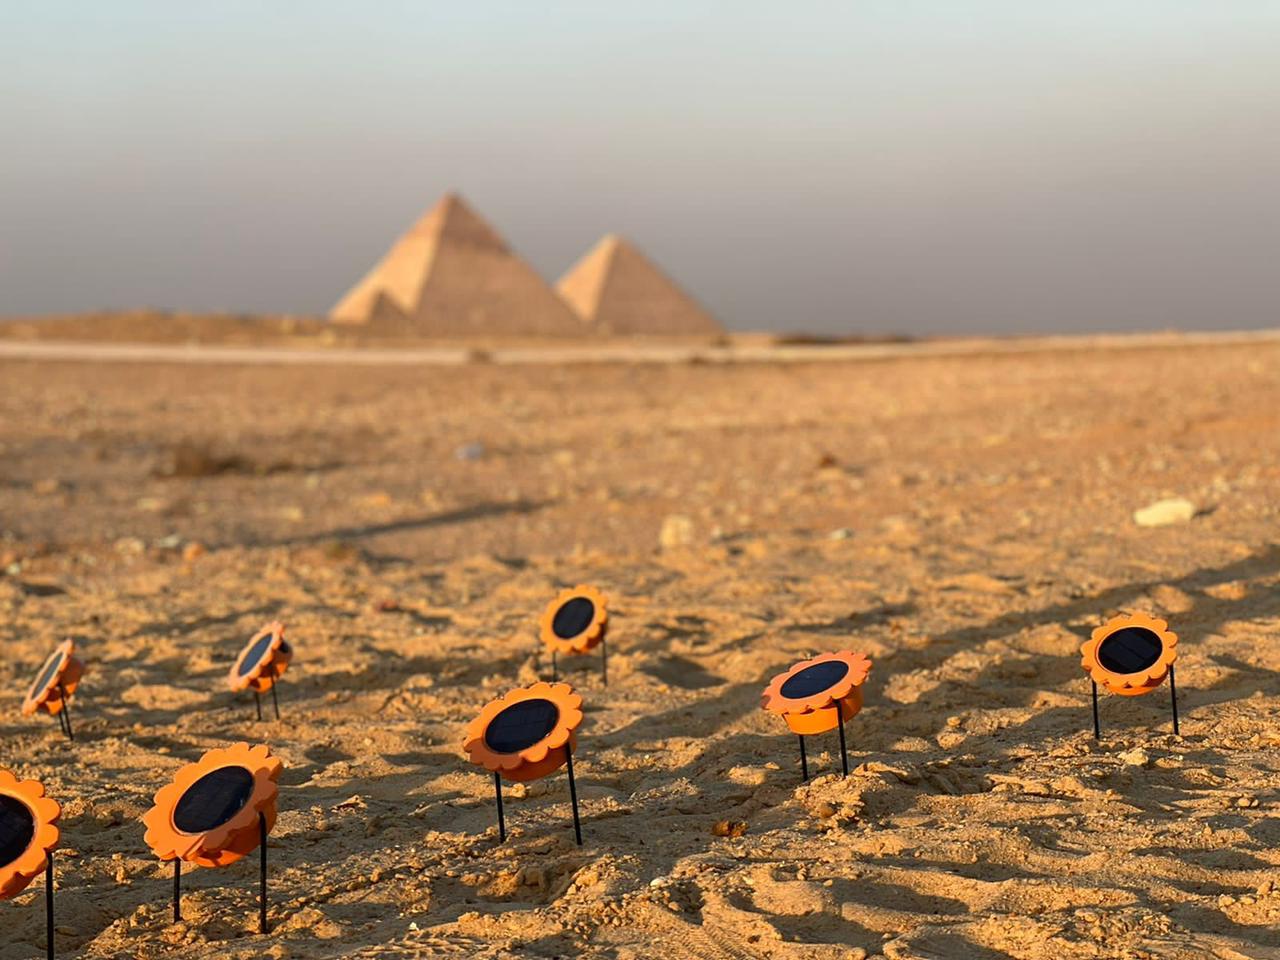 “شمس فور لايتينغ” أو “شمس للإضاءة” أول اختراع مغربي للمصابيح الشمسية تعرض بمؤتمر المناخ (كوب 27) بمصر.